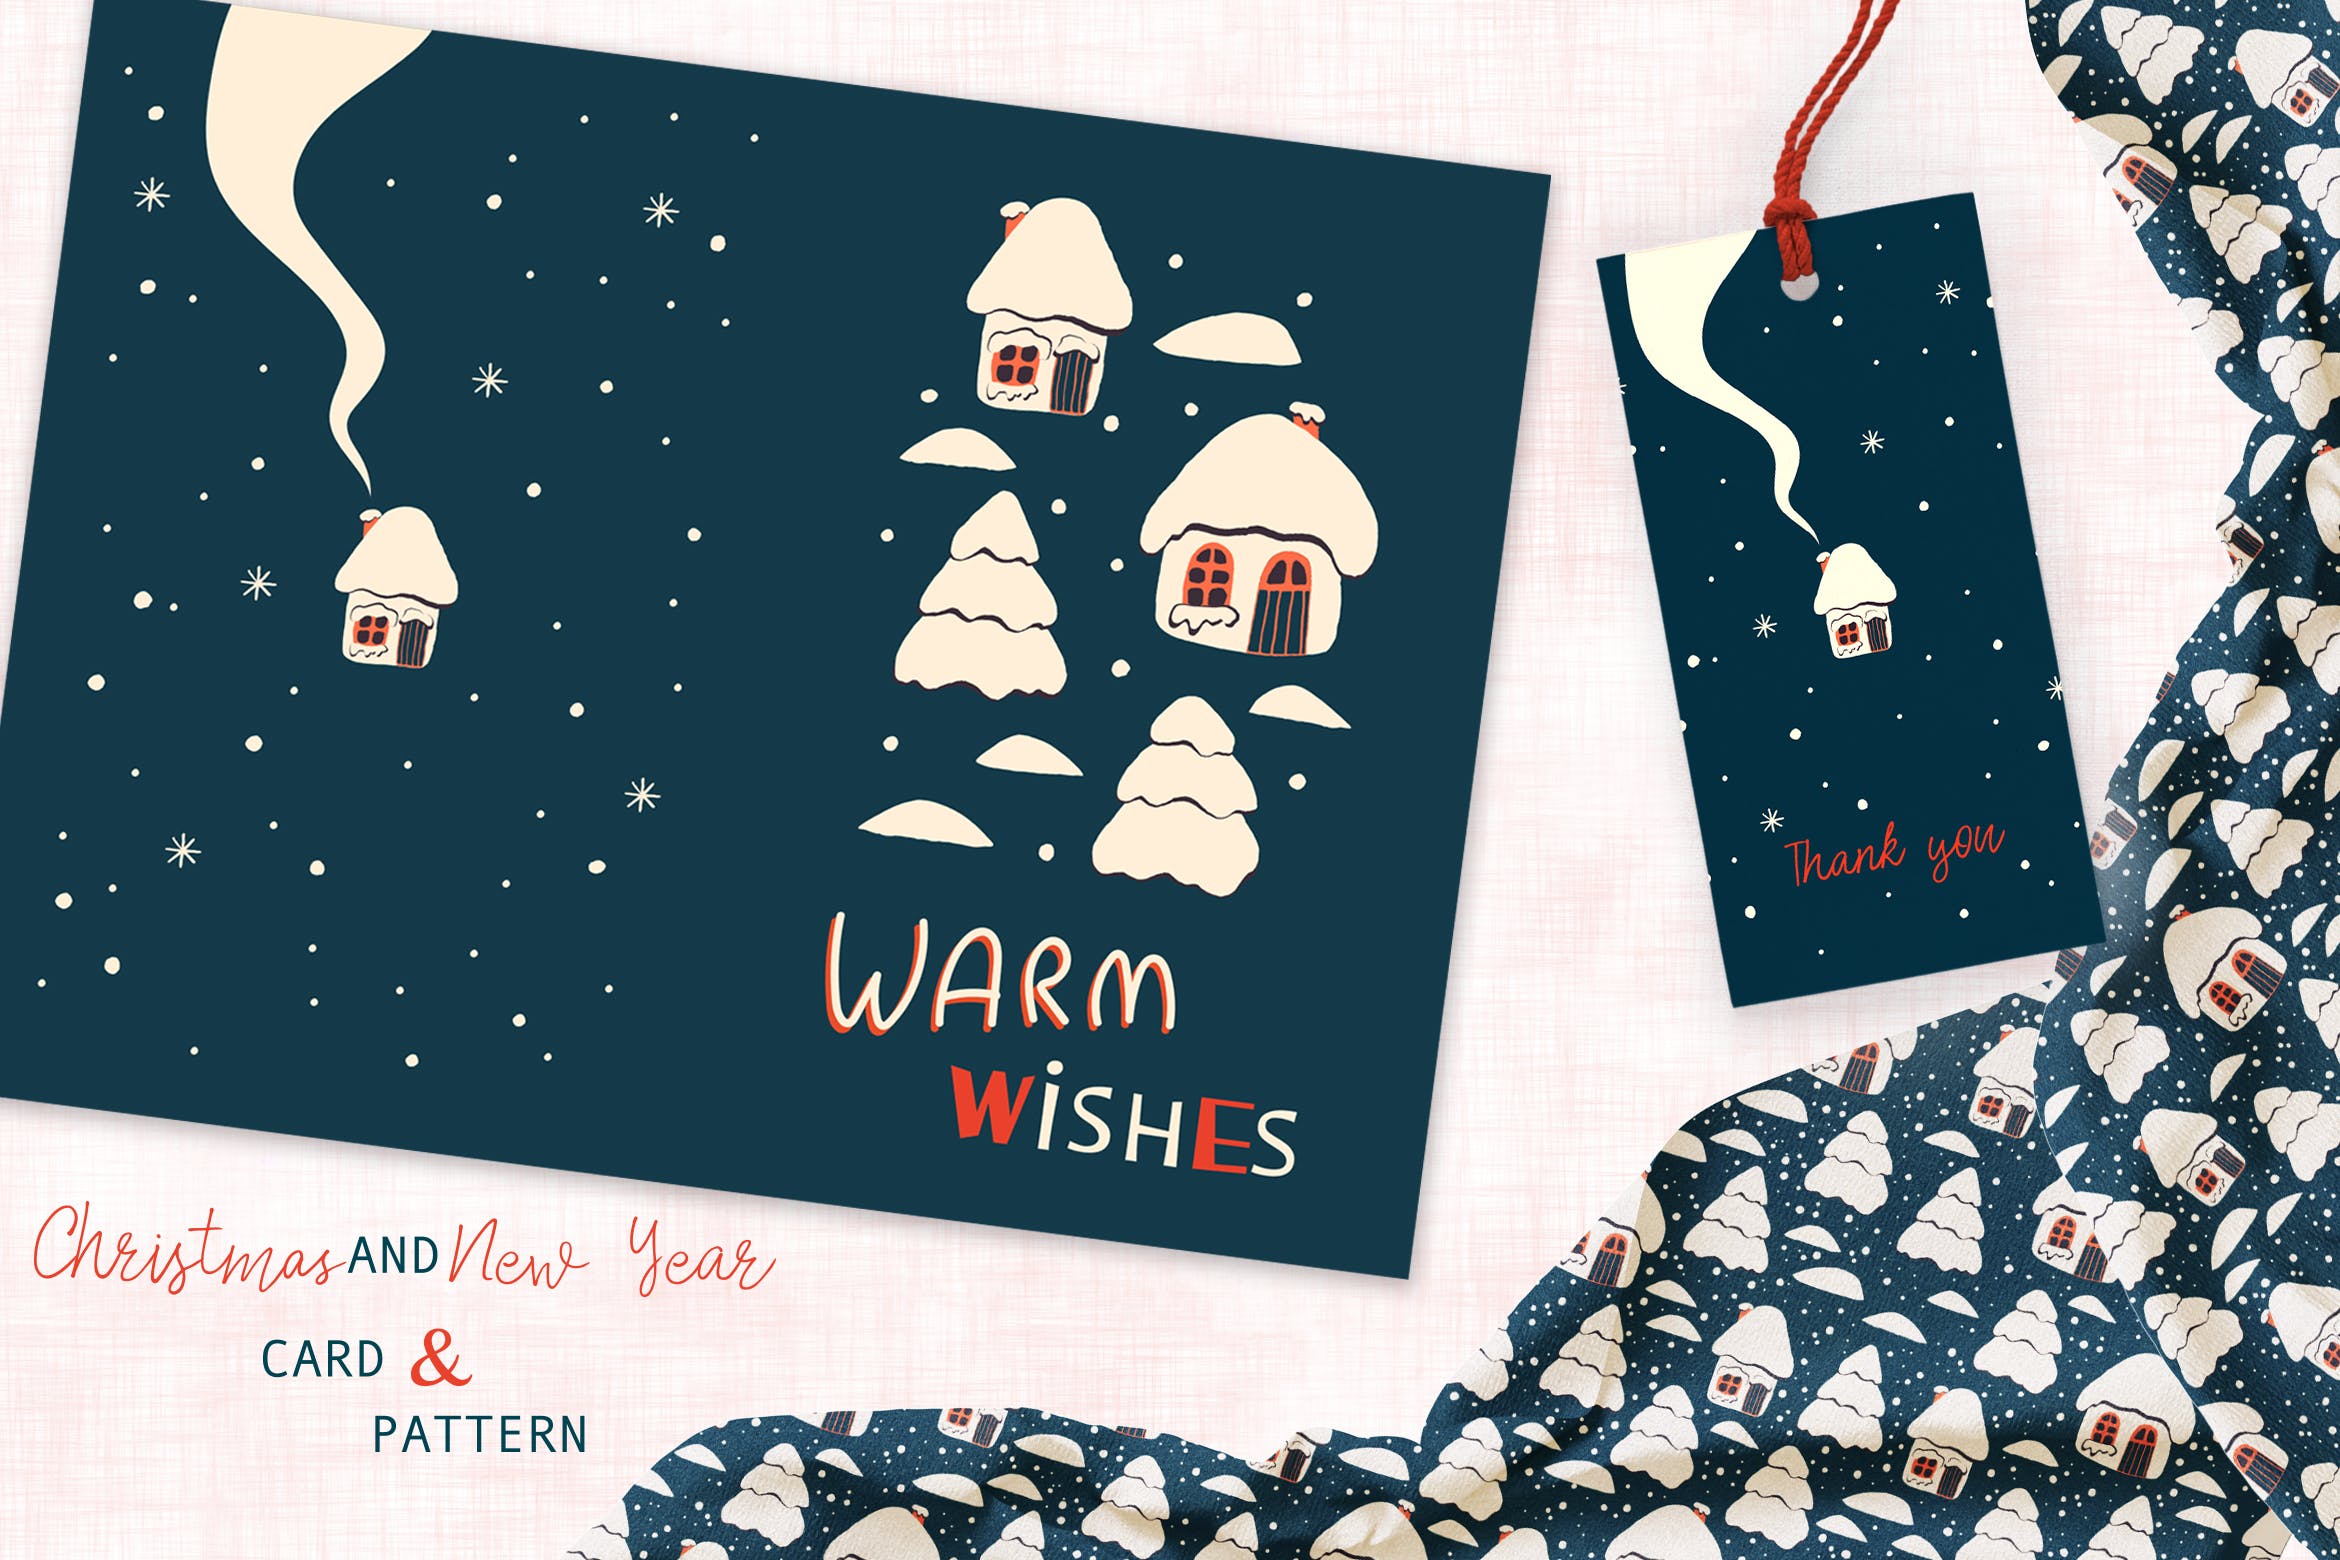 圣诞屋手绘图案背景素材/贺卡设计模板 Christmas Houses Greeting Card and Pattern插图